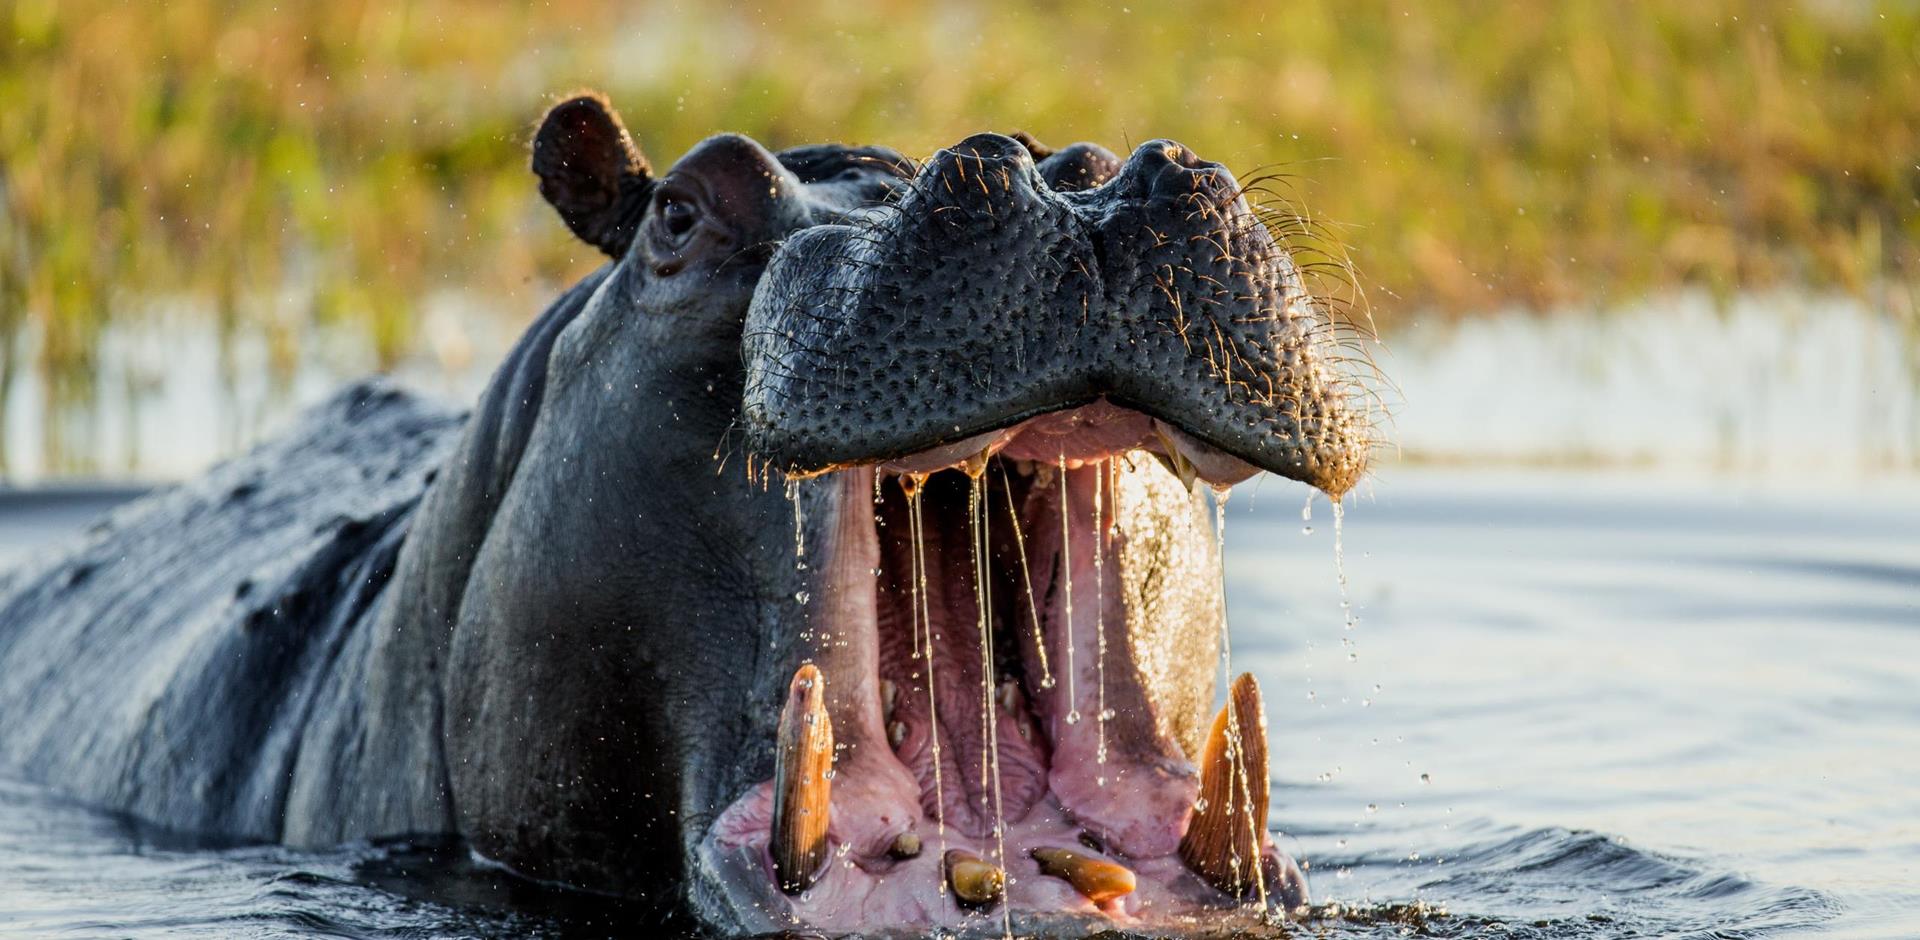 Hippo, Botswana, Africa